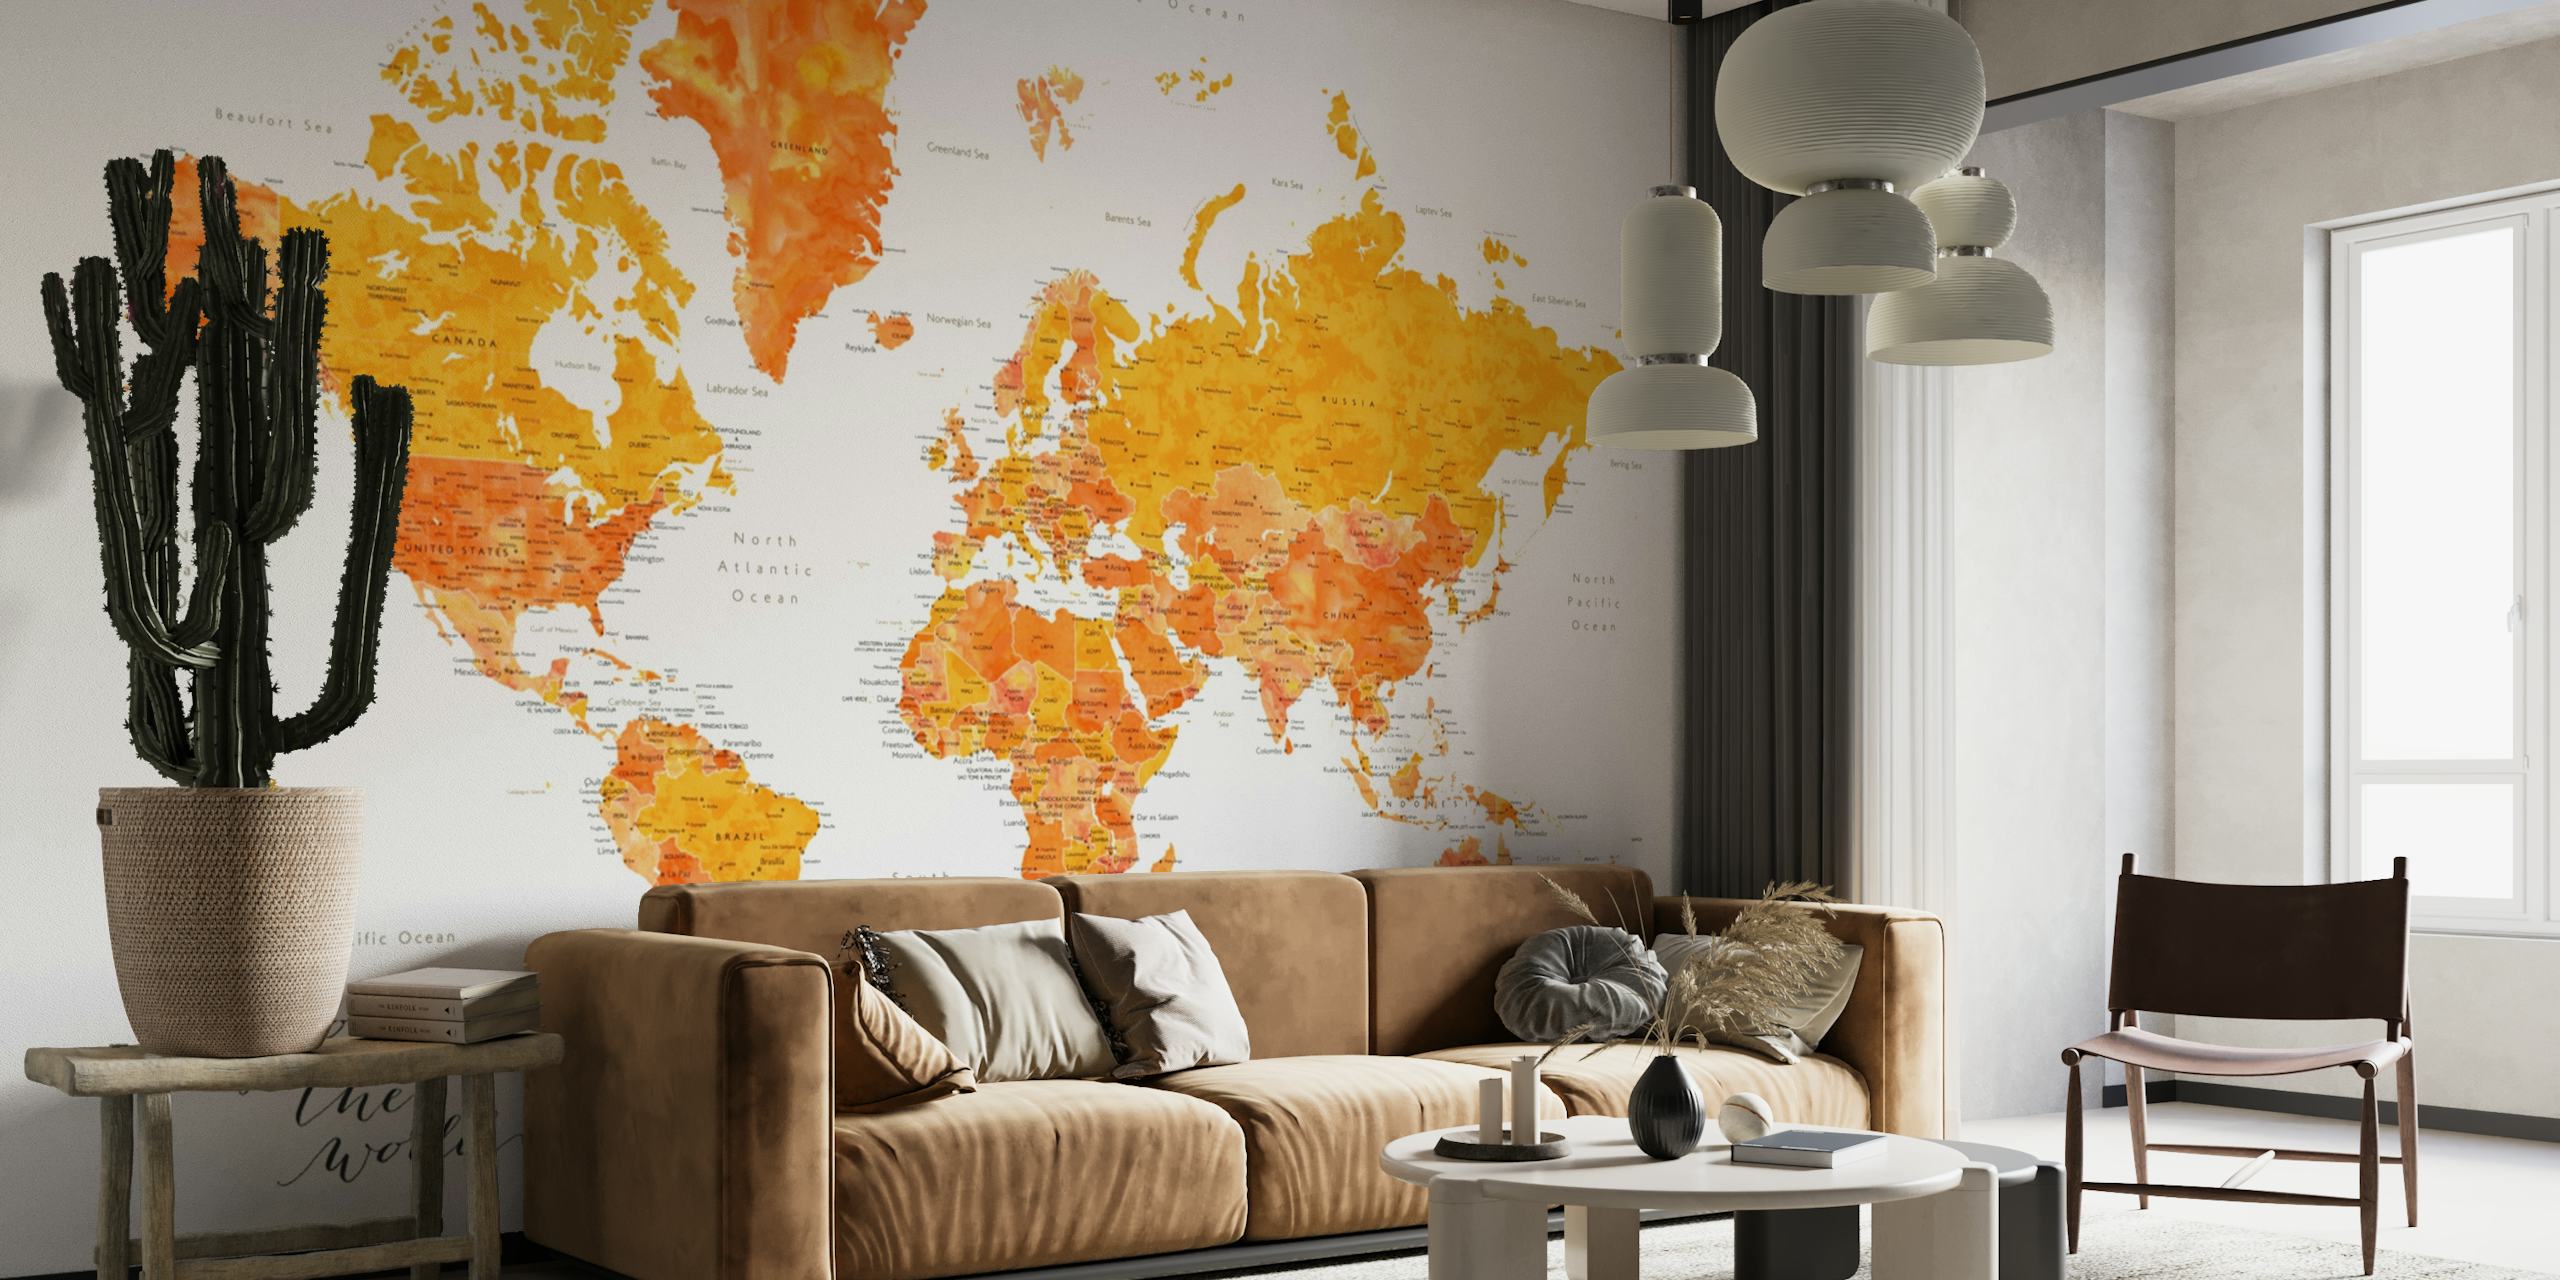 Wandgemälde mit Weltkarte in Orange und Gelb mit dem Titel „Explore the World Carlotta“